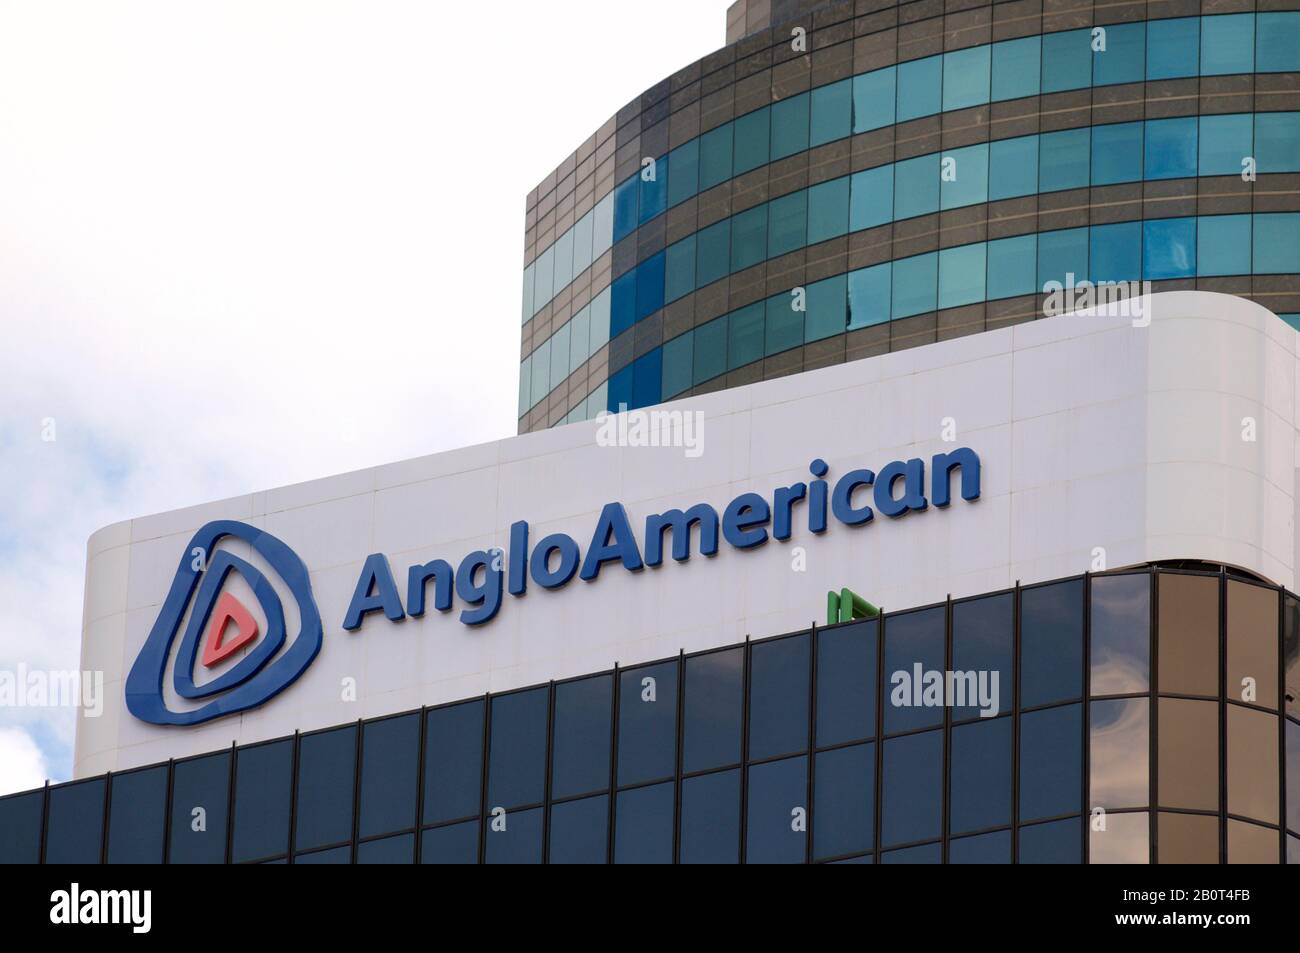 Brisbane, Queensland, Australien - 26. Januar 2020: Blick auf das angloamerikanische Schild, das oben auf einem Gebäude in Brisbane hängt. Anglo American plc Stockfoto